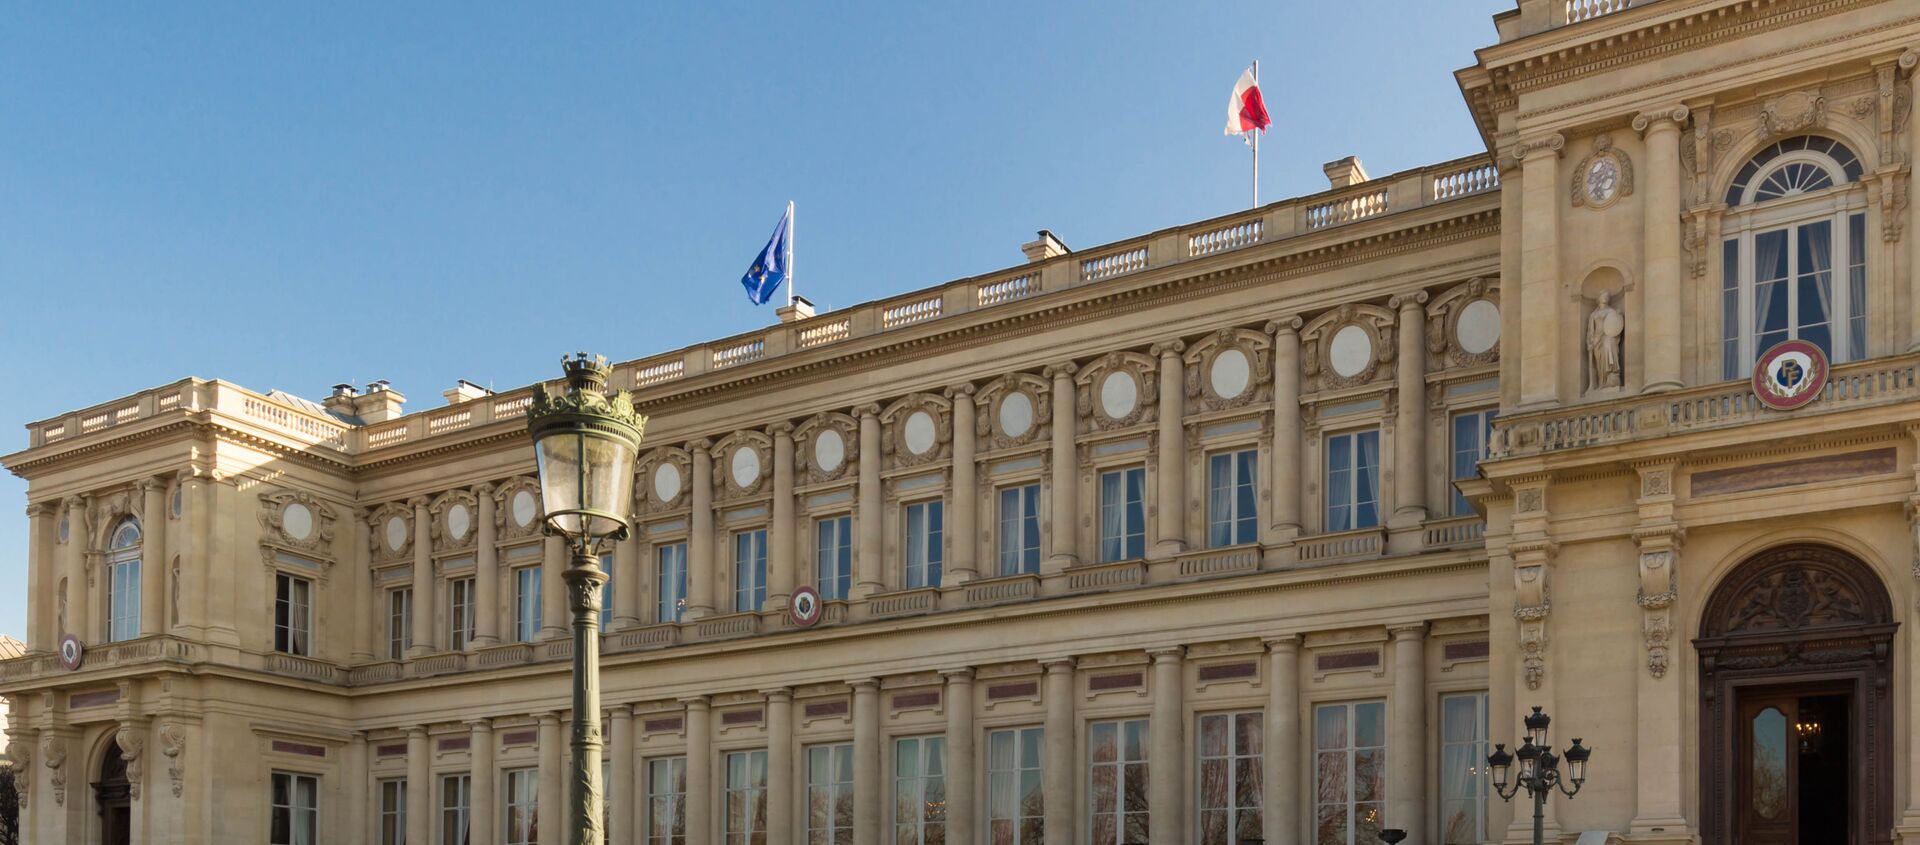 Ministarstvo spoljnih poslova Francuske u Parizu - Sputnik Srbija, 1920, 01.02.2021